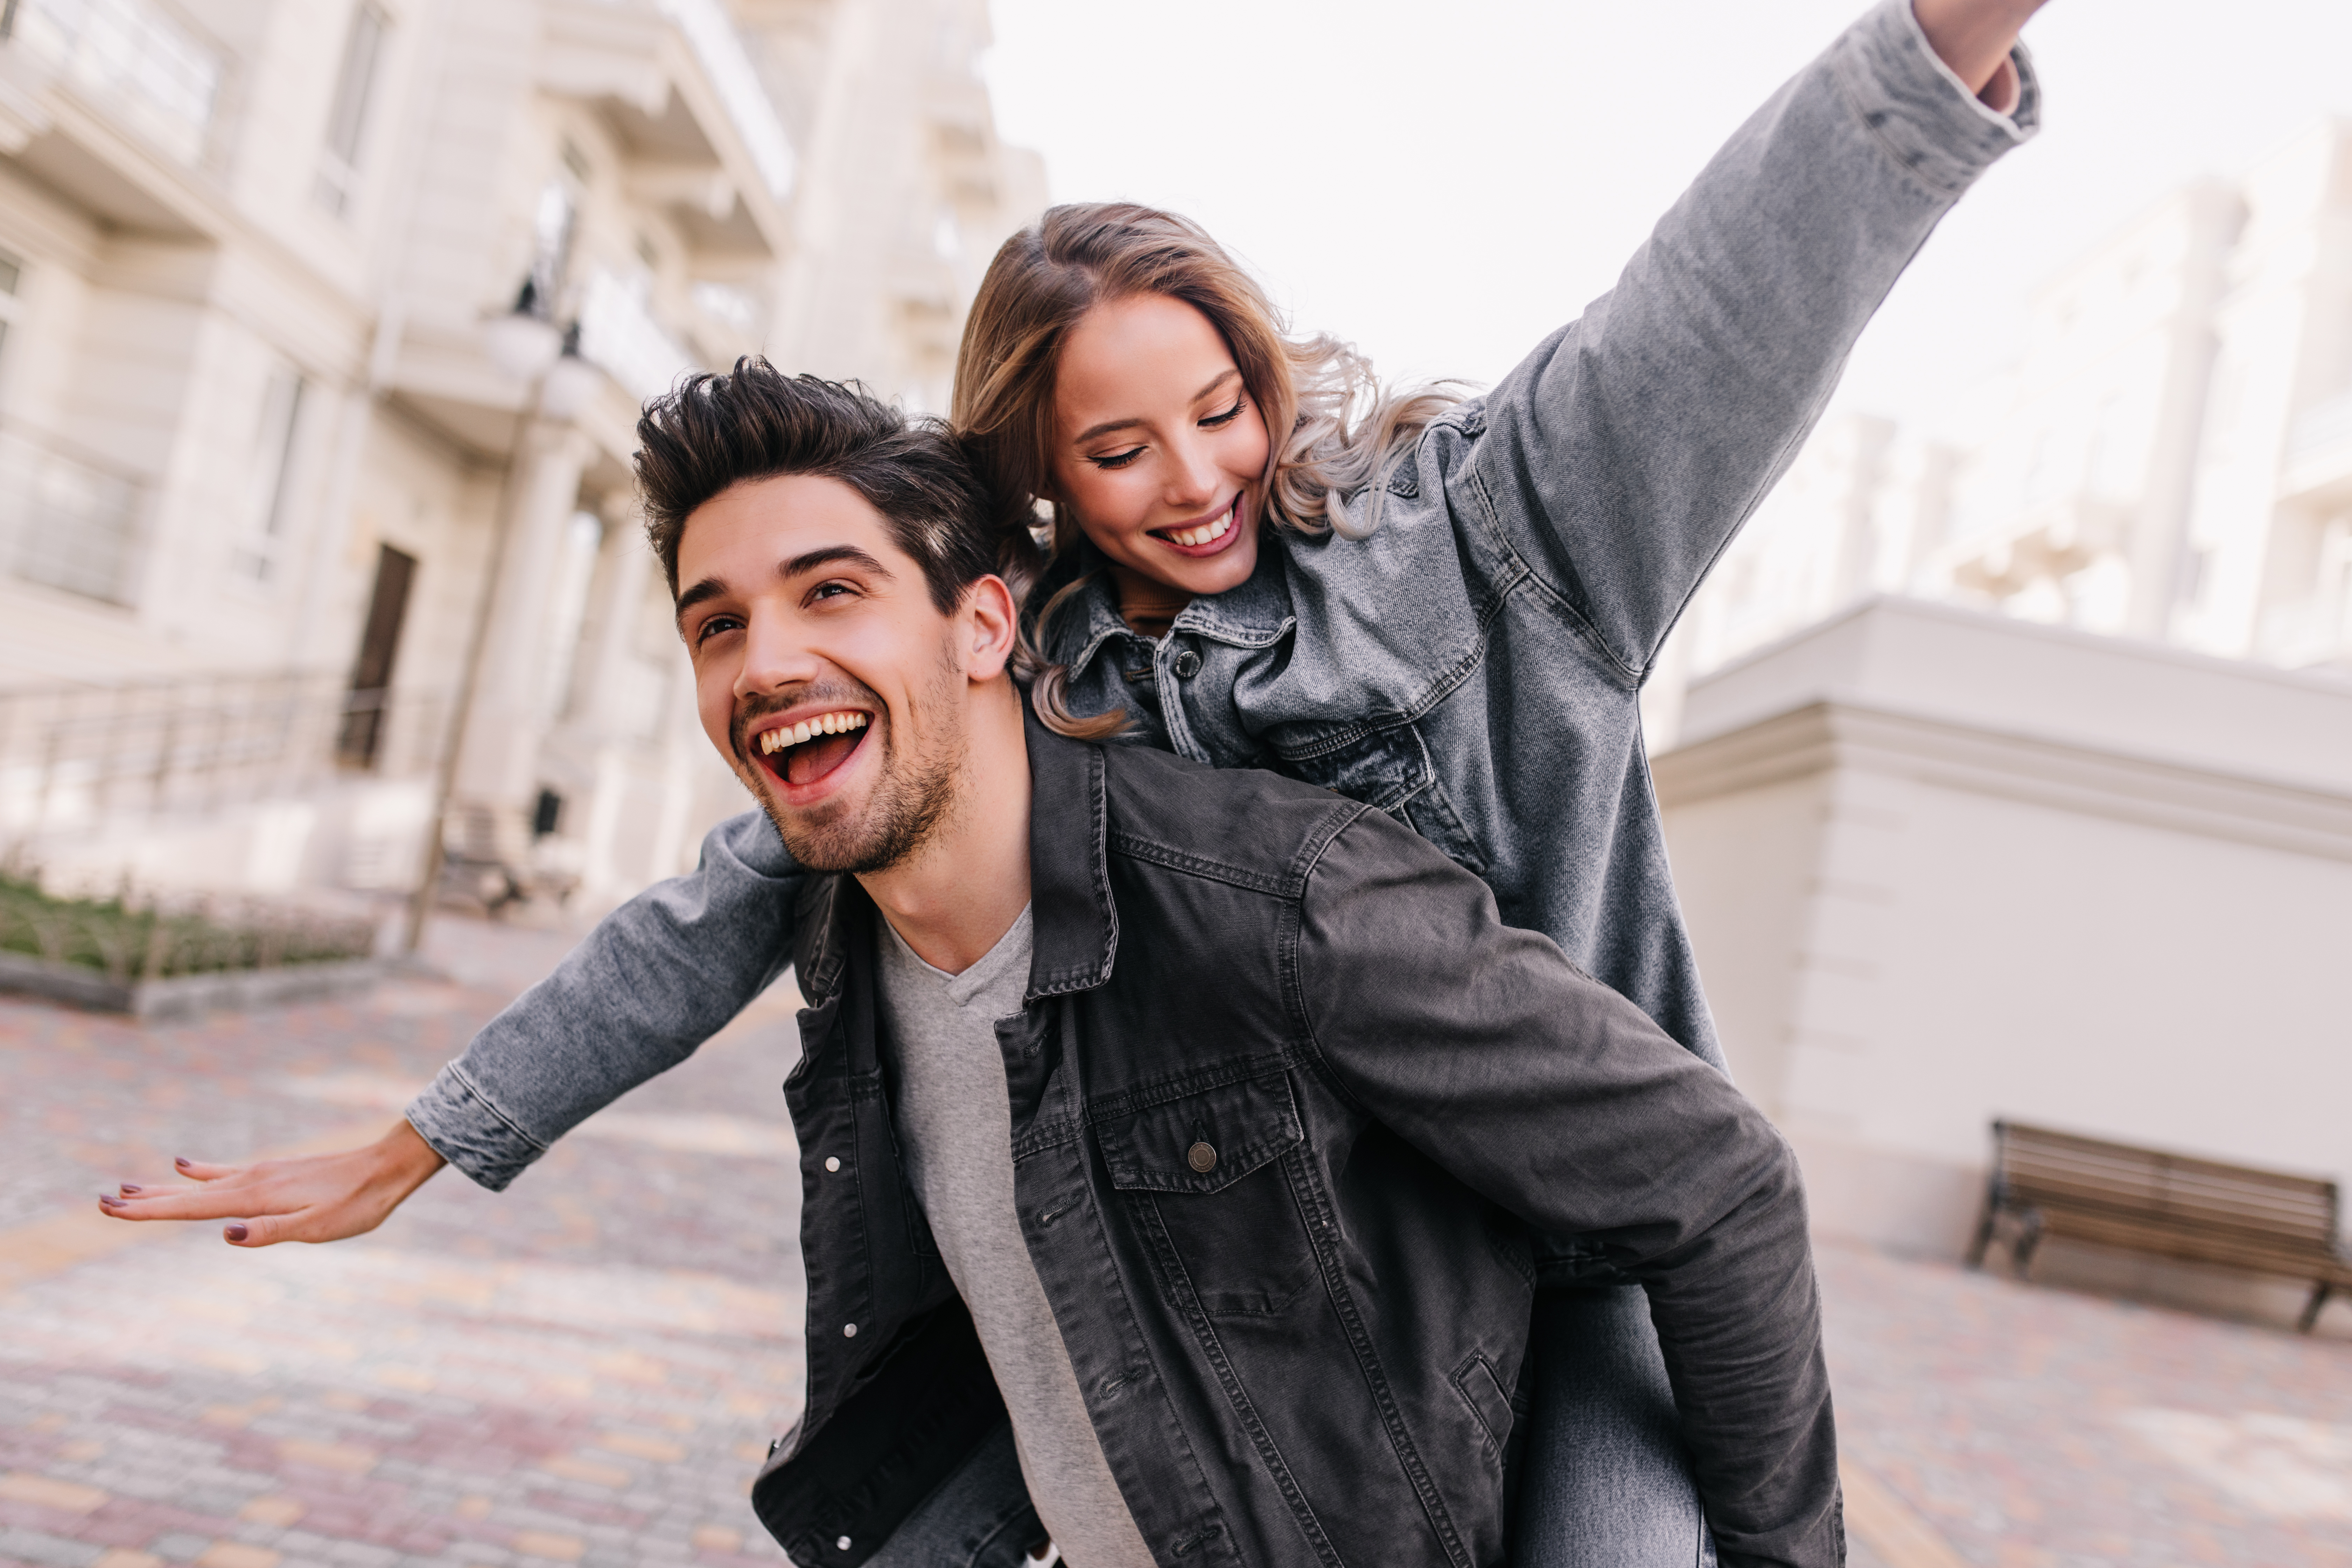 Mutlu çiftler: İlişkinizi nasıl sağlıklı bir şekilde devam ettirebilirsiniz?